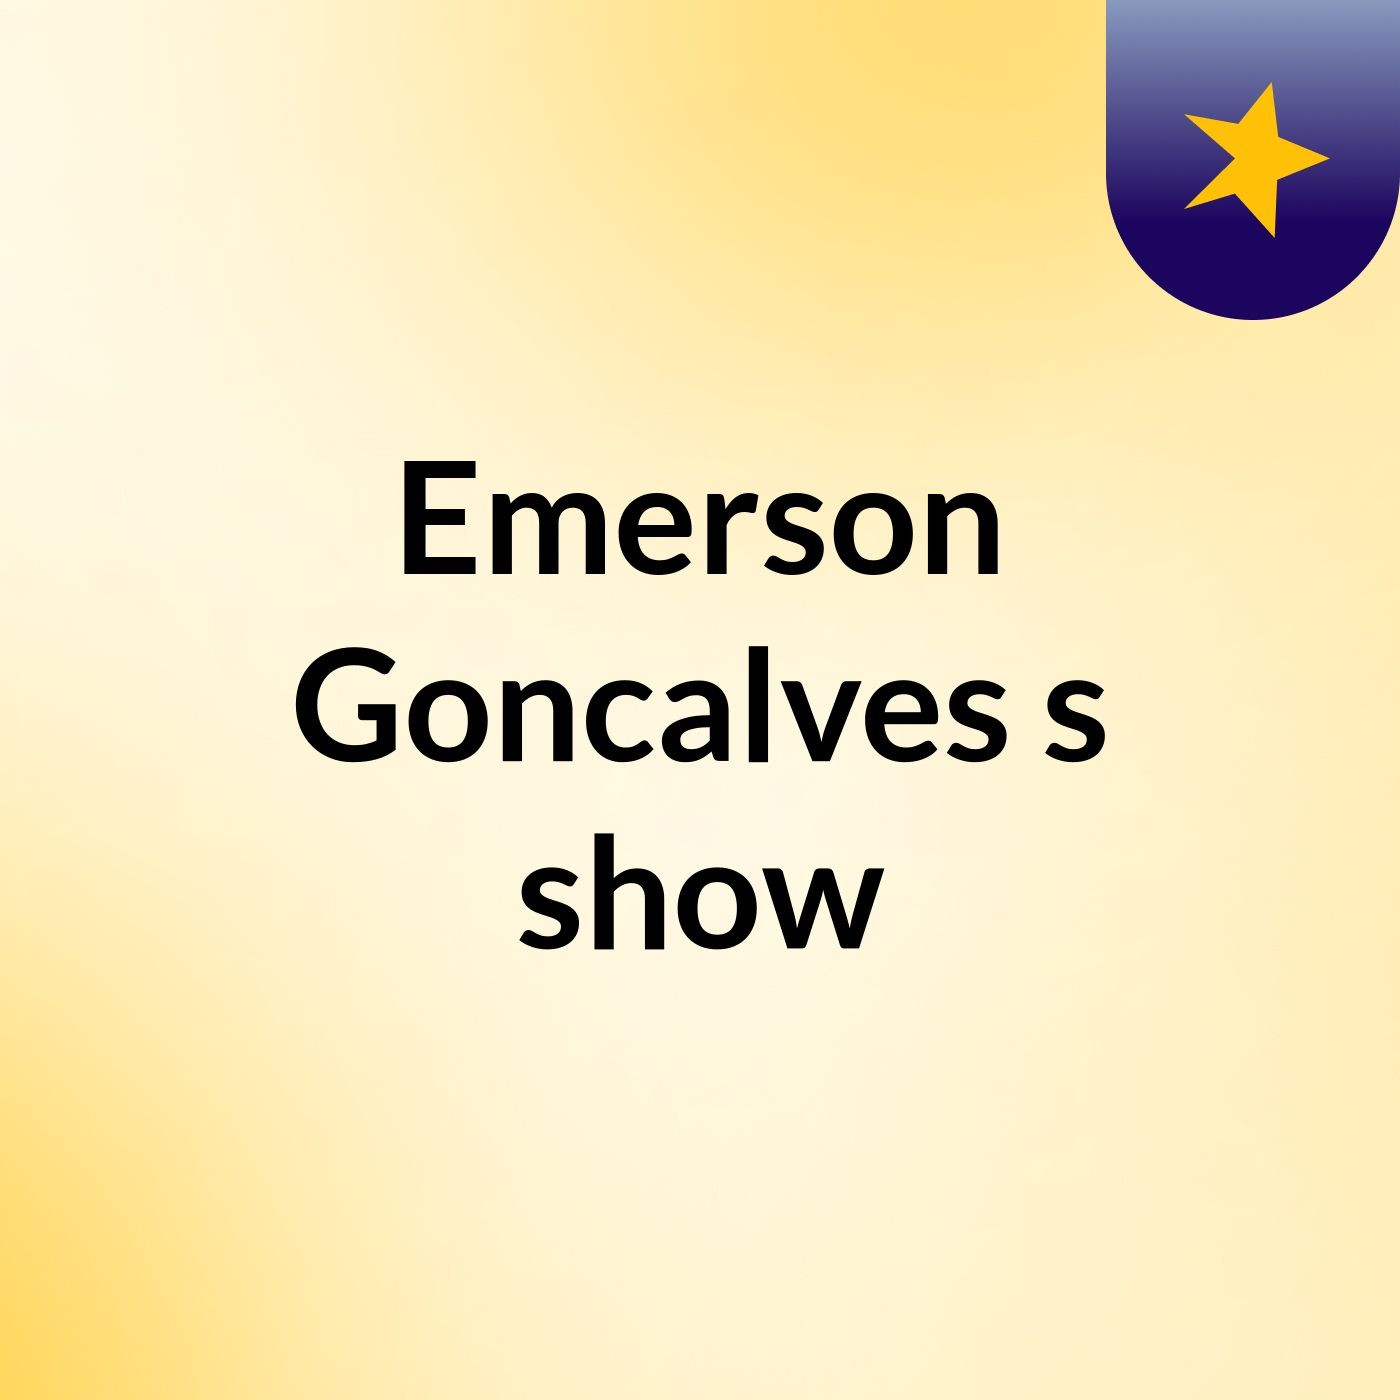 Emerson Goncalves's show